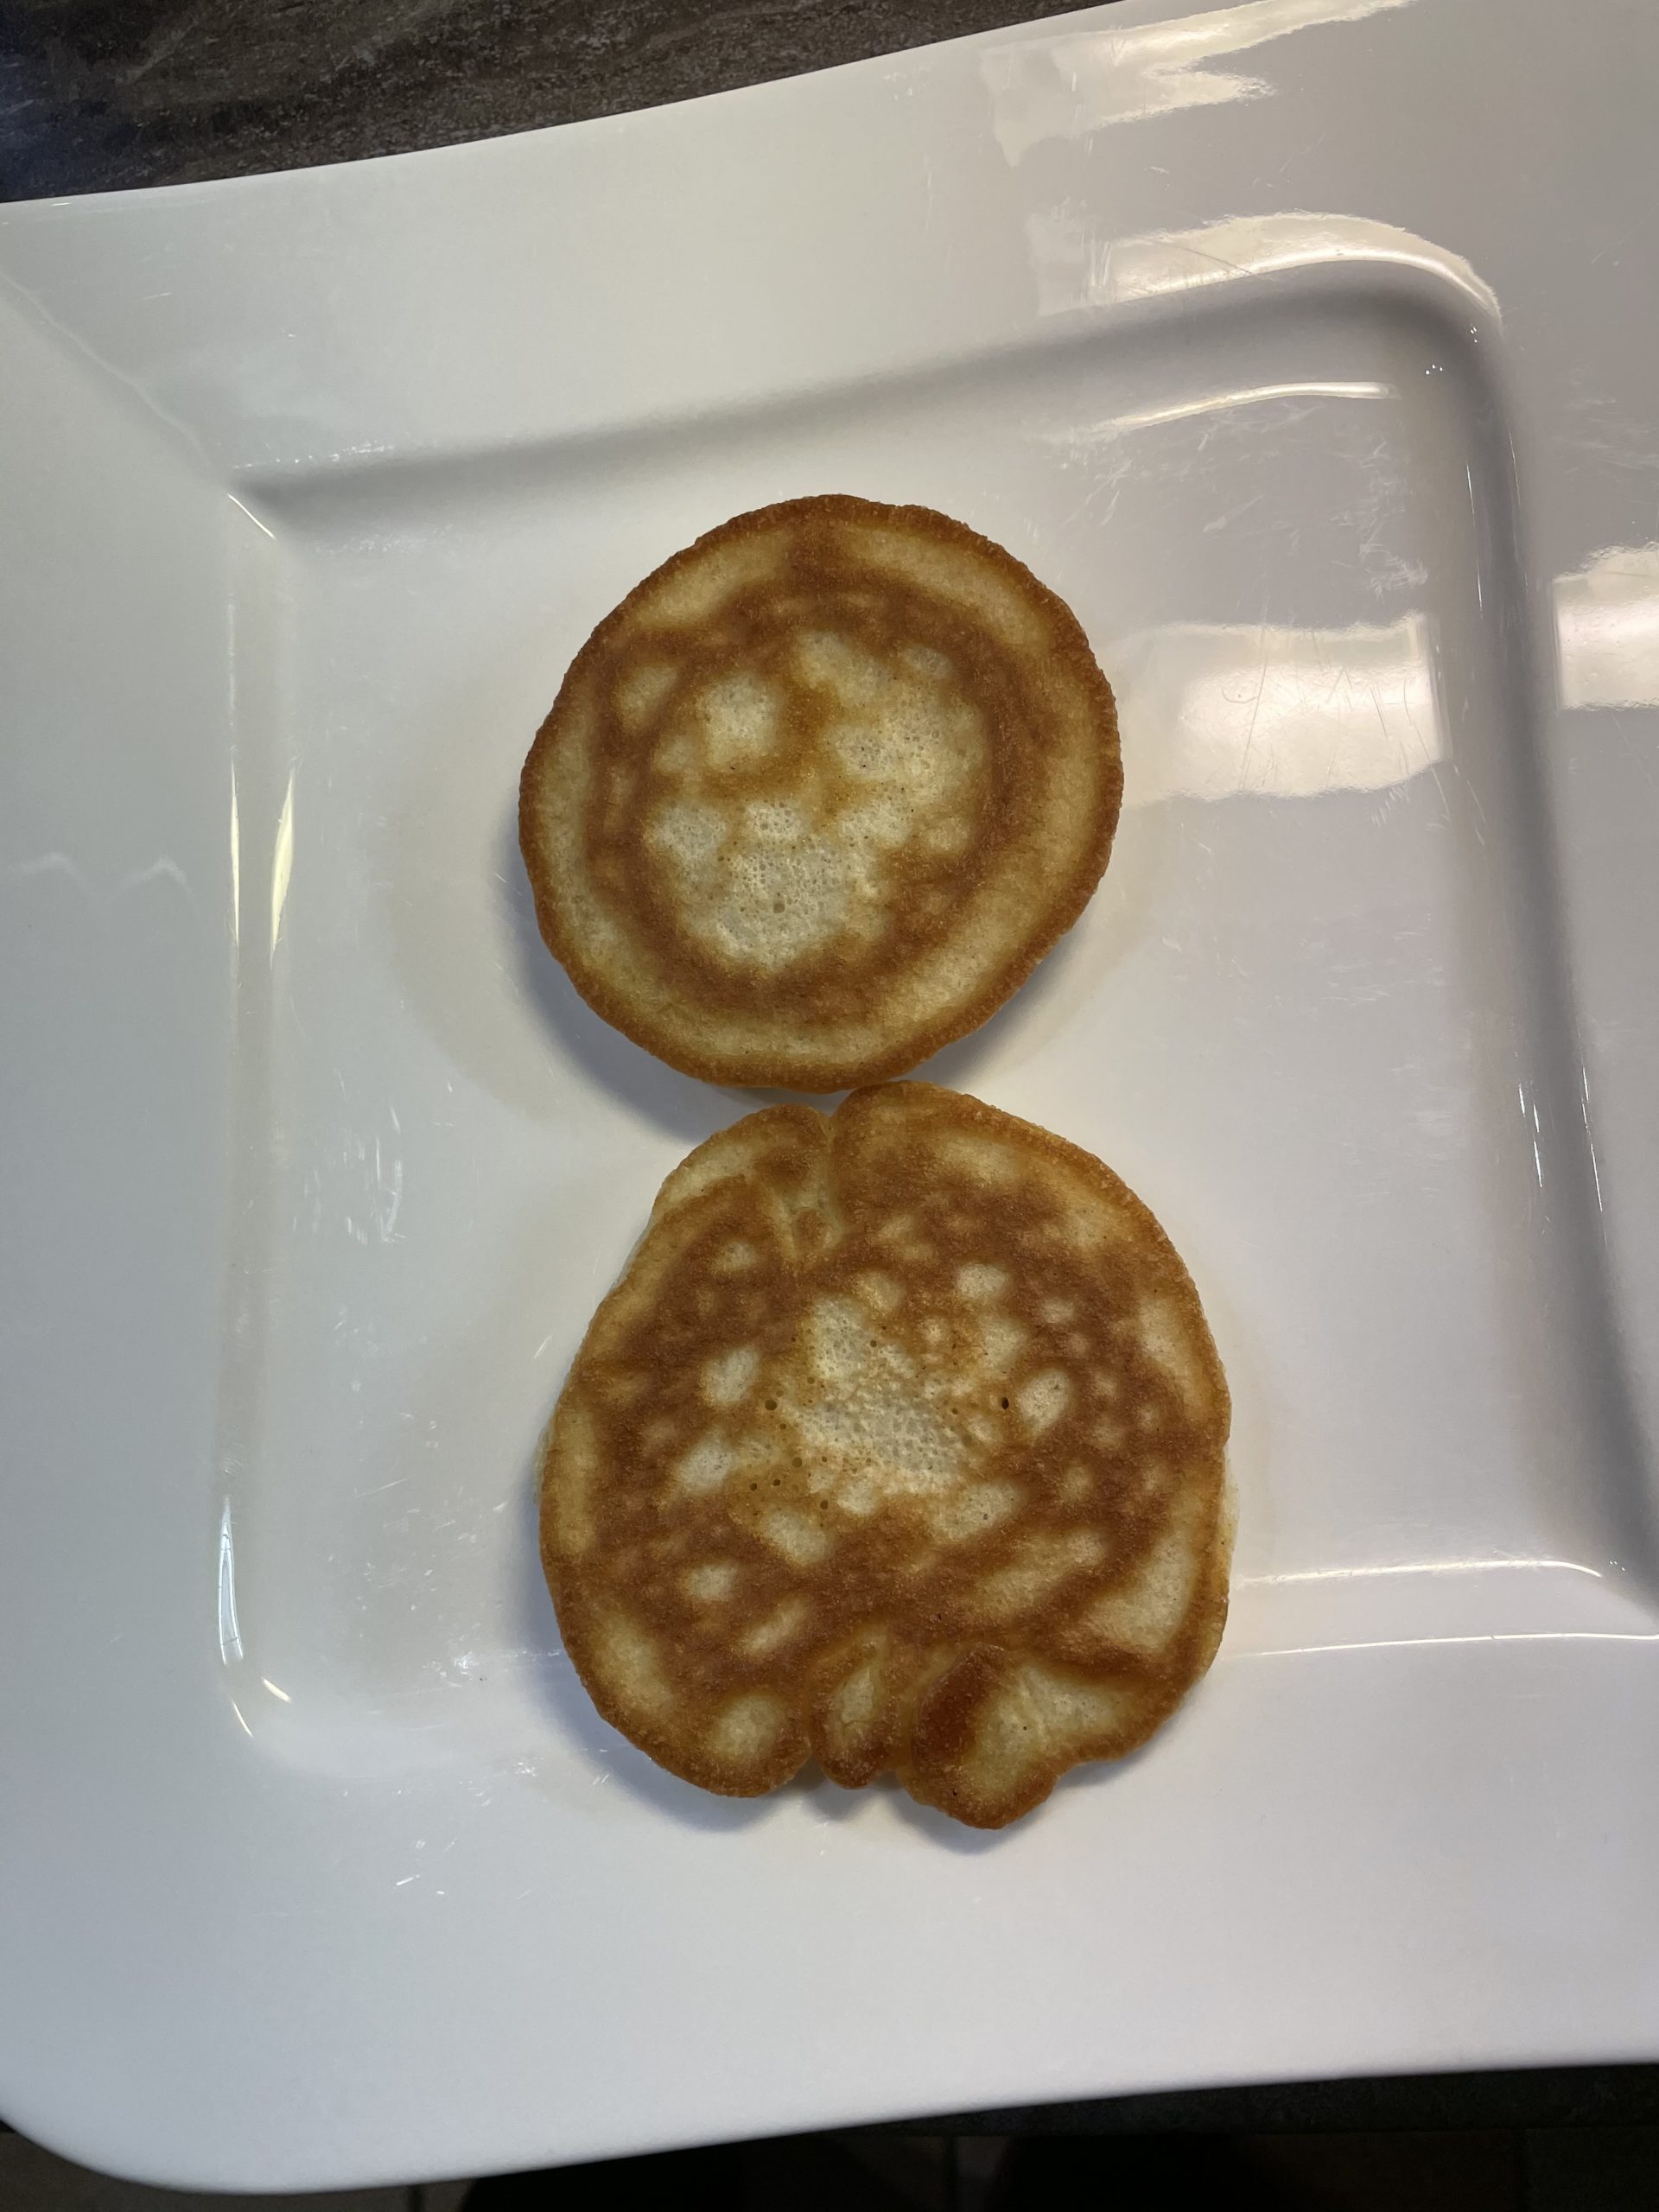 Bild zum Schritt 12 für die Kinder-Beschäftigung: 'Dann nehmt die fertigen Pancakes aus der Pfanne.  ...'